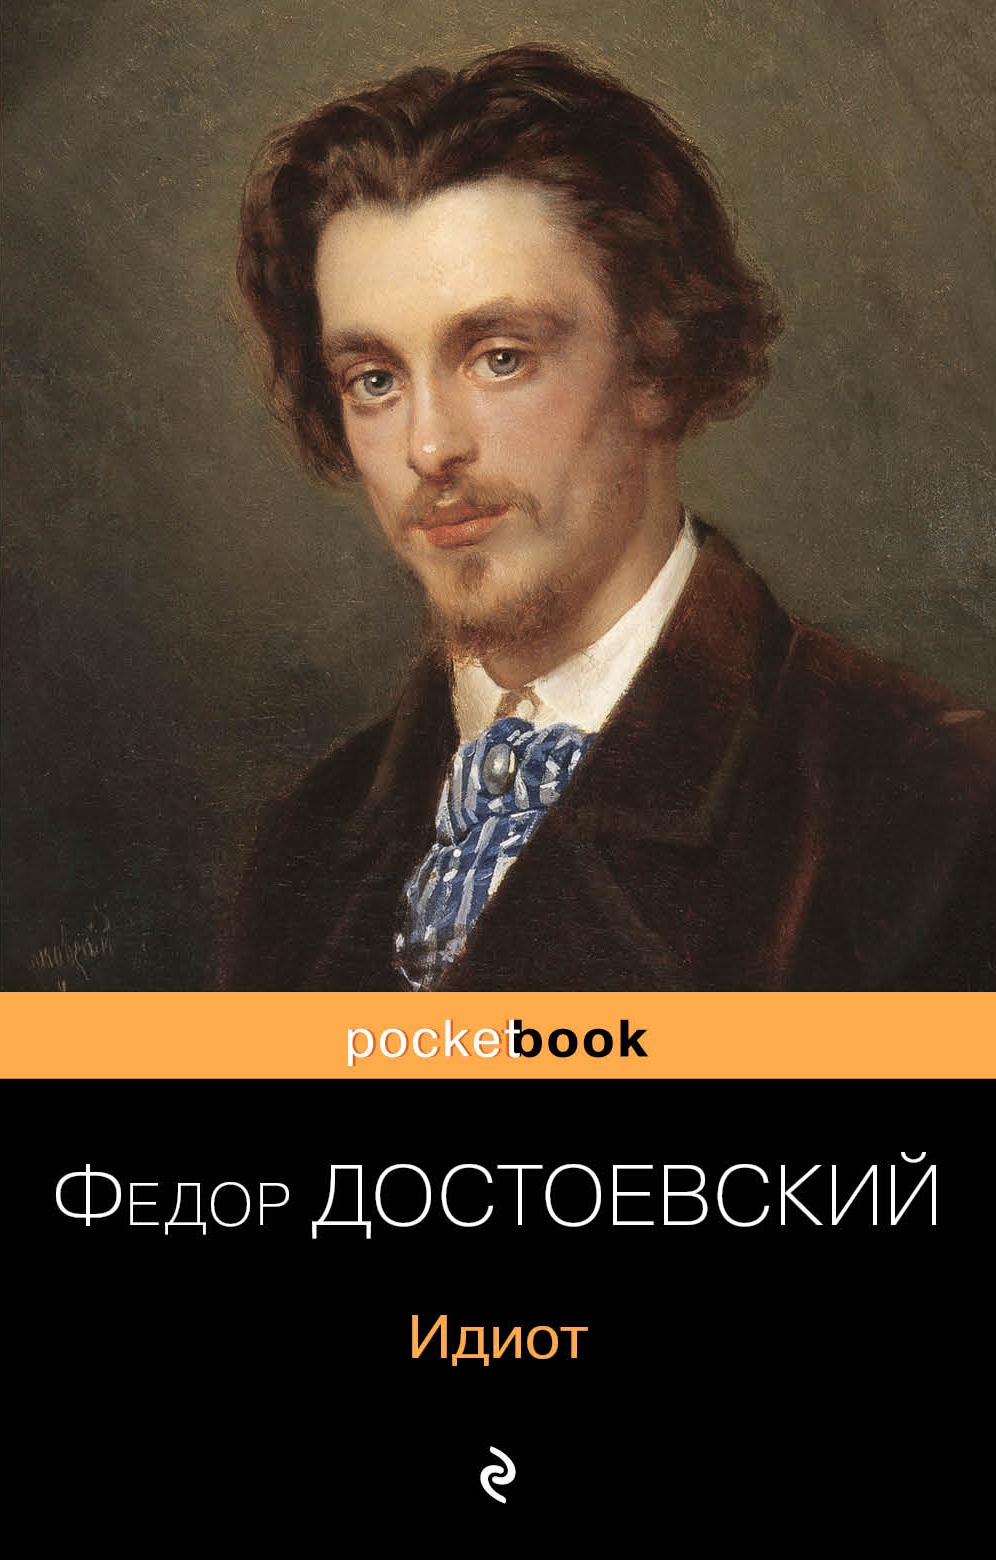 Книга «Идиот» Федор Достоевский — 1 апреля 2020 г.